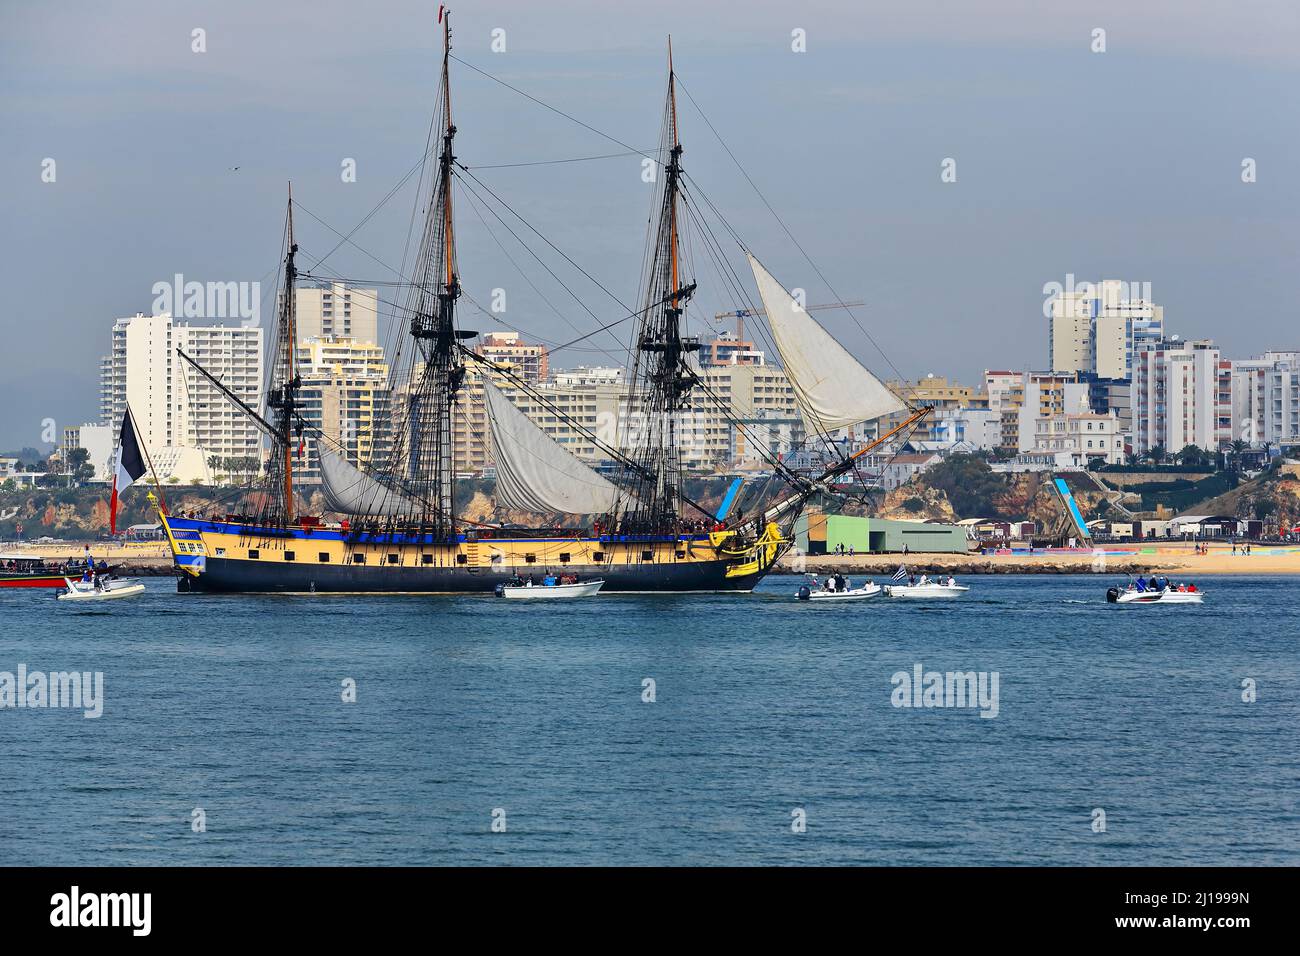 Aus dem 18. Jahrhundert stammende französische Fregatte-Nachbildung des Hafens mit einer Flottille, die den westlichen Maulwurf willkommen heißt. Portimao-Portugal-165 Stockfoto